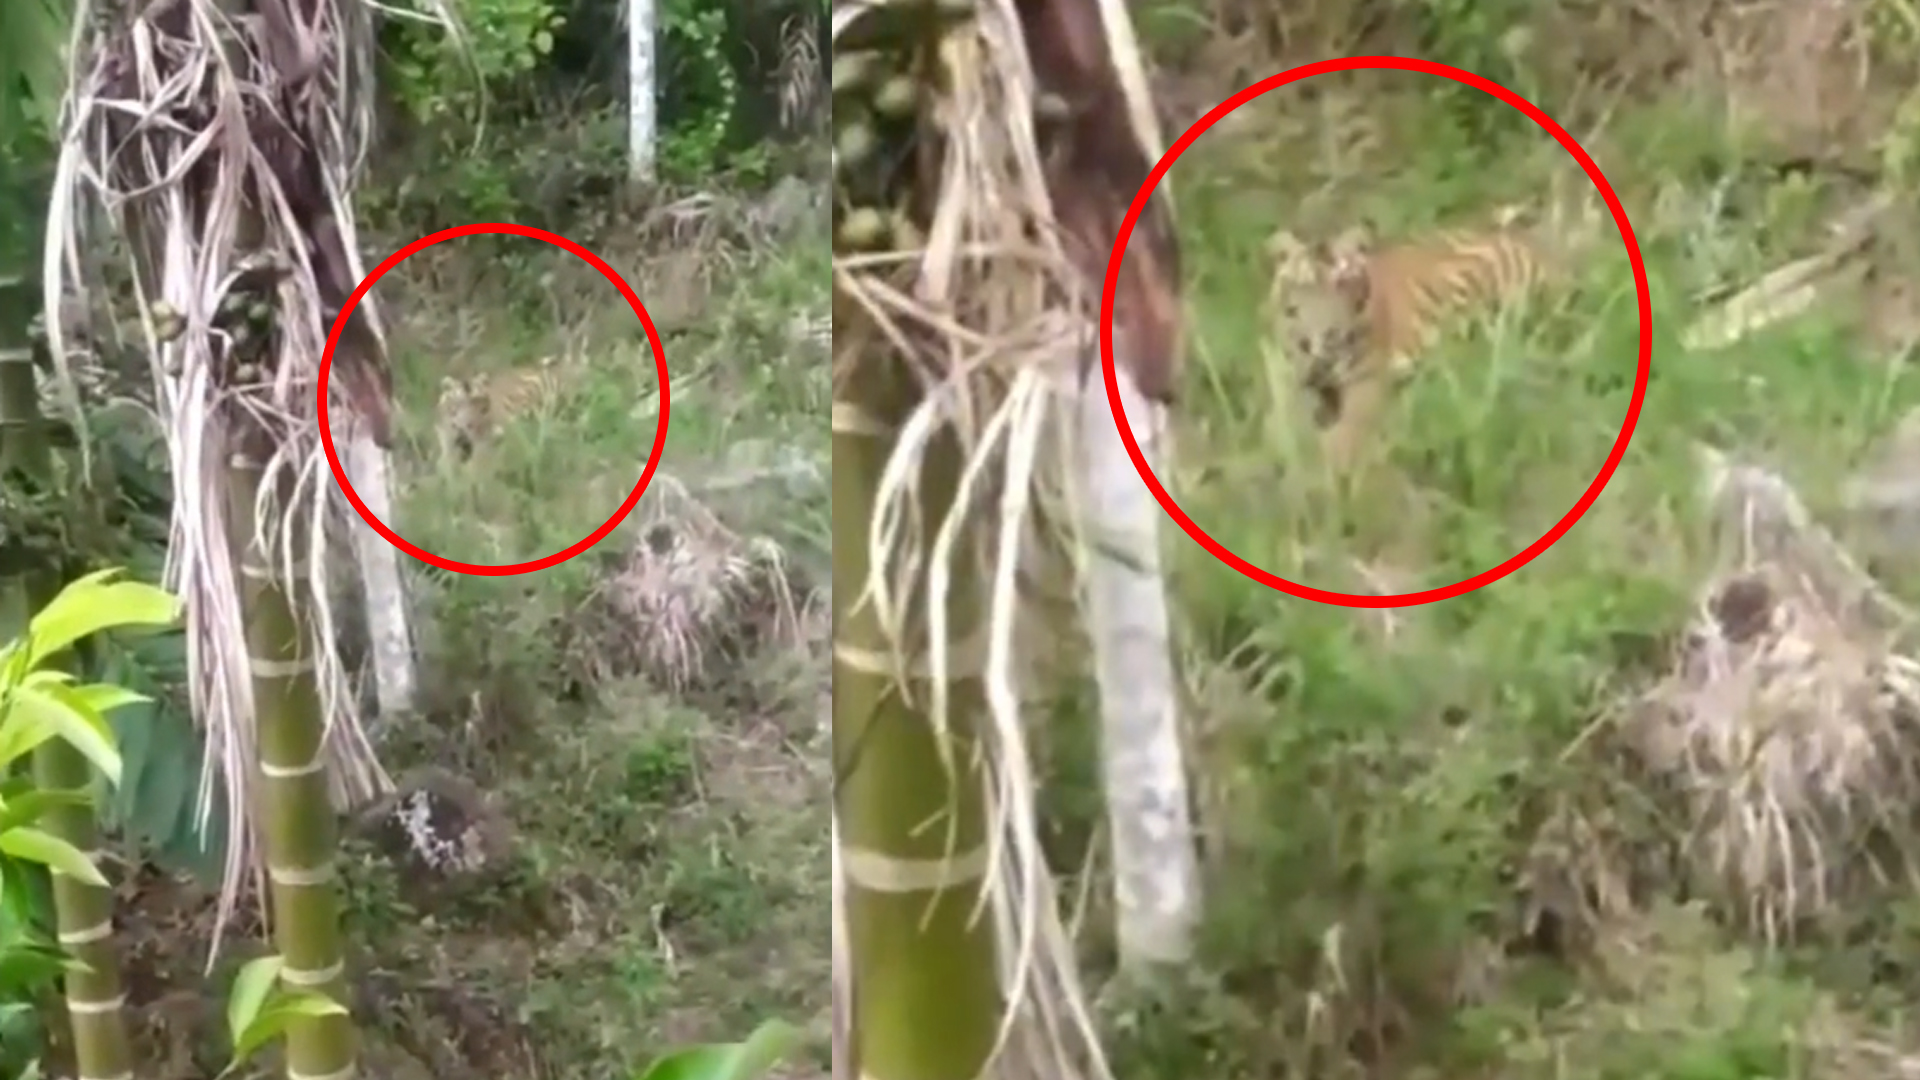 Ngeri!, Momen Pria Panjat Pohon Demi Hindari Harimau Didepannya, Sempat Rekam Pakai Ponsel